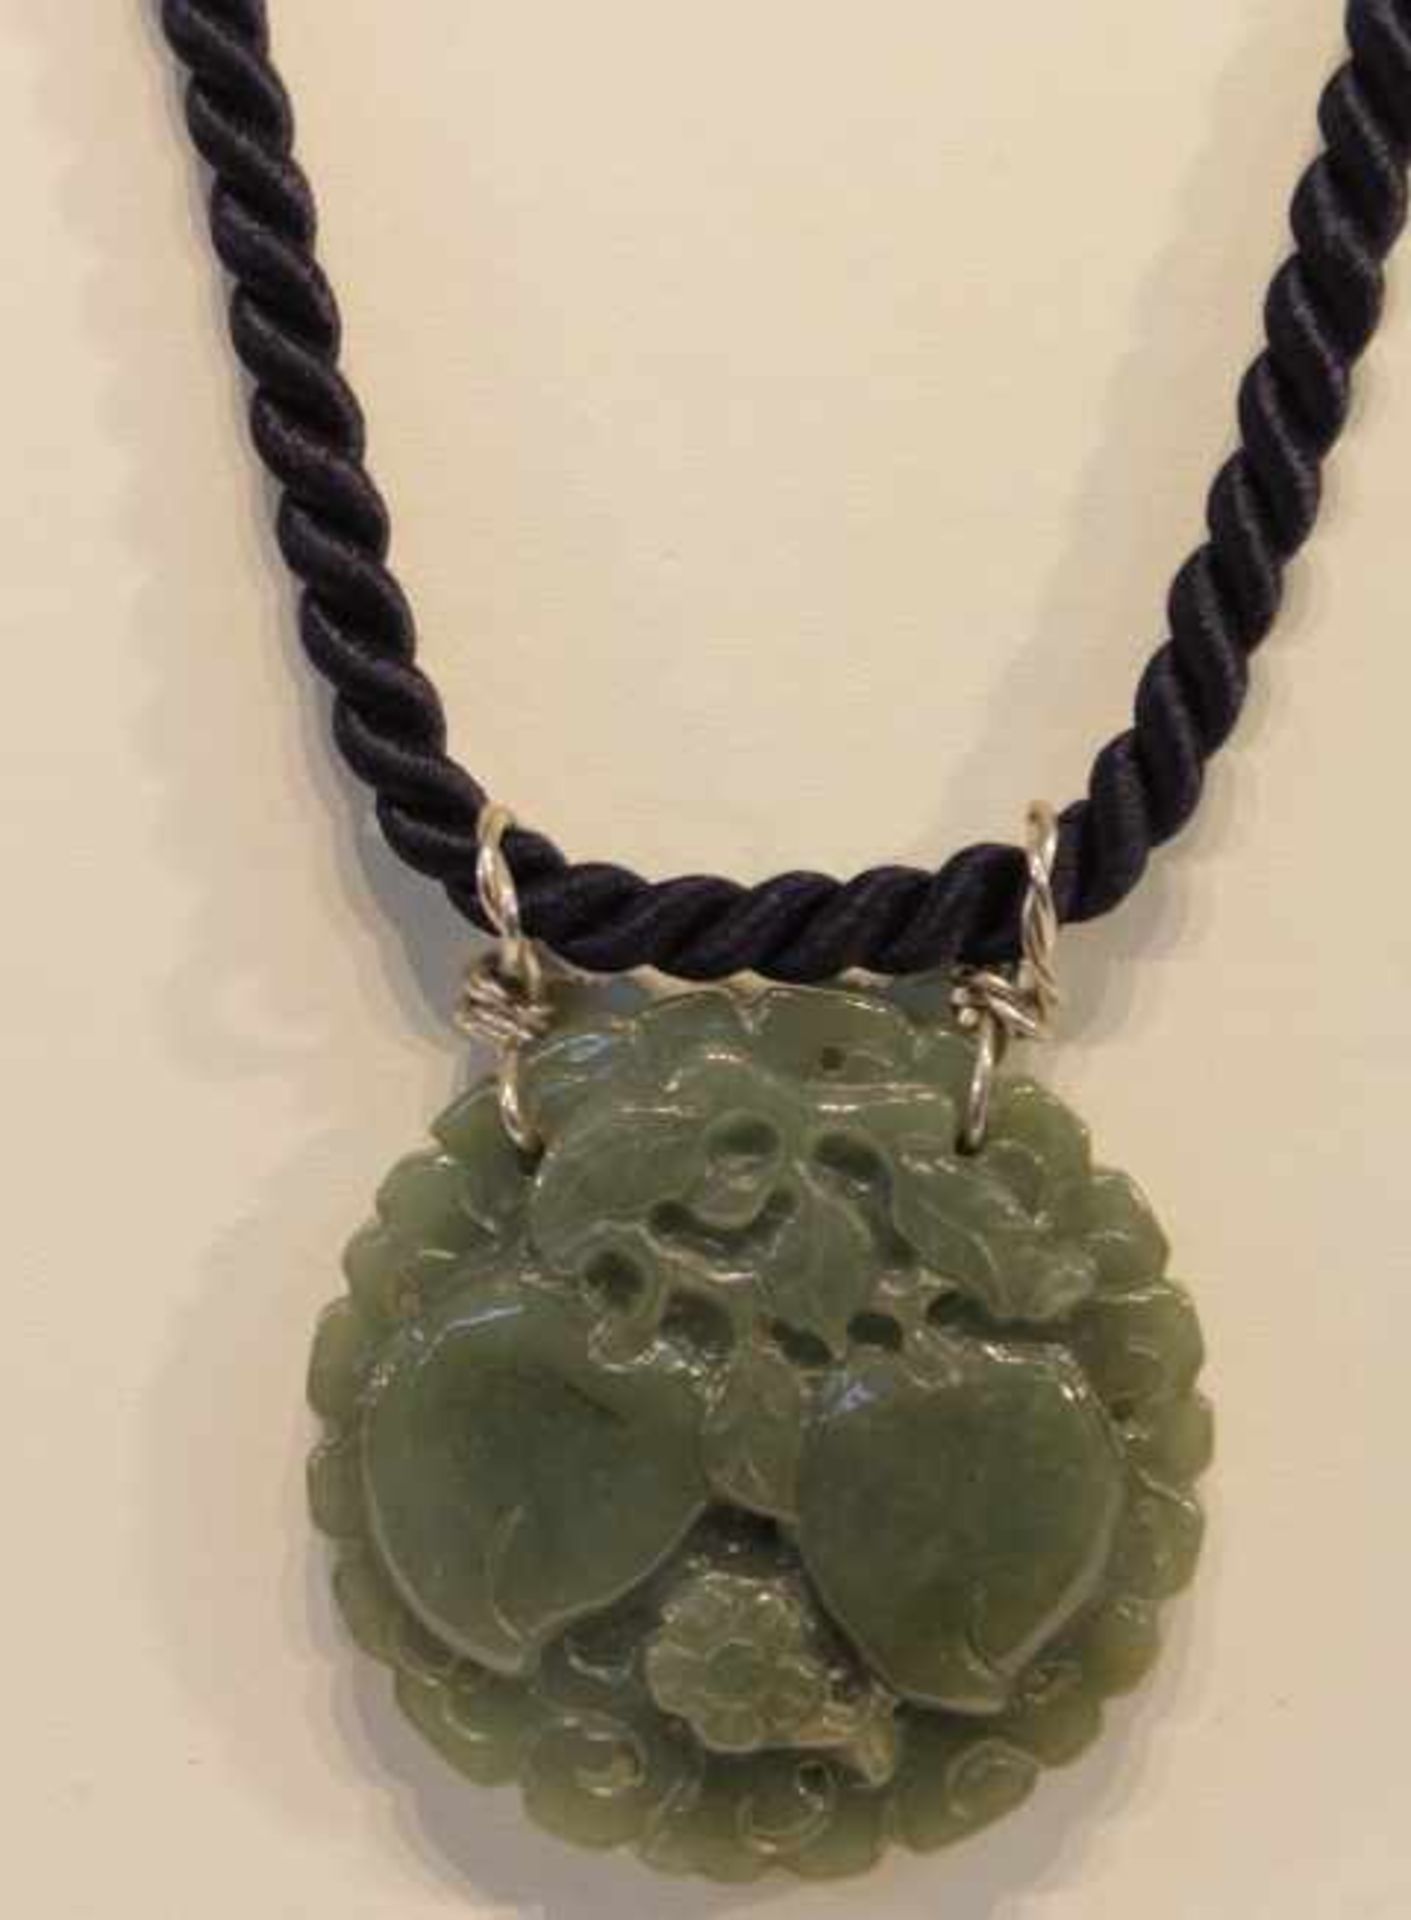 CollierBlaue Kordel Verschluß SilberAnhänger Wohl Jade?mit geprägten Drachen und ObstDm:5,5x5,5cmL: